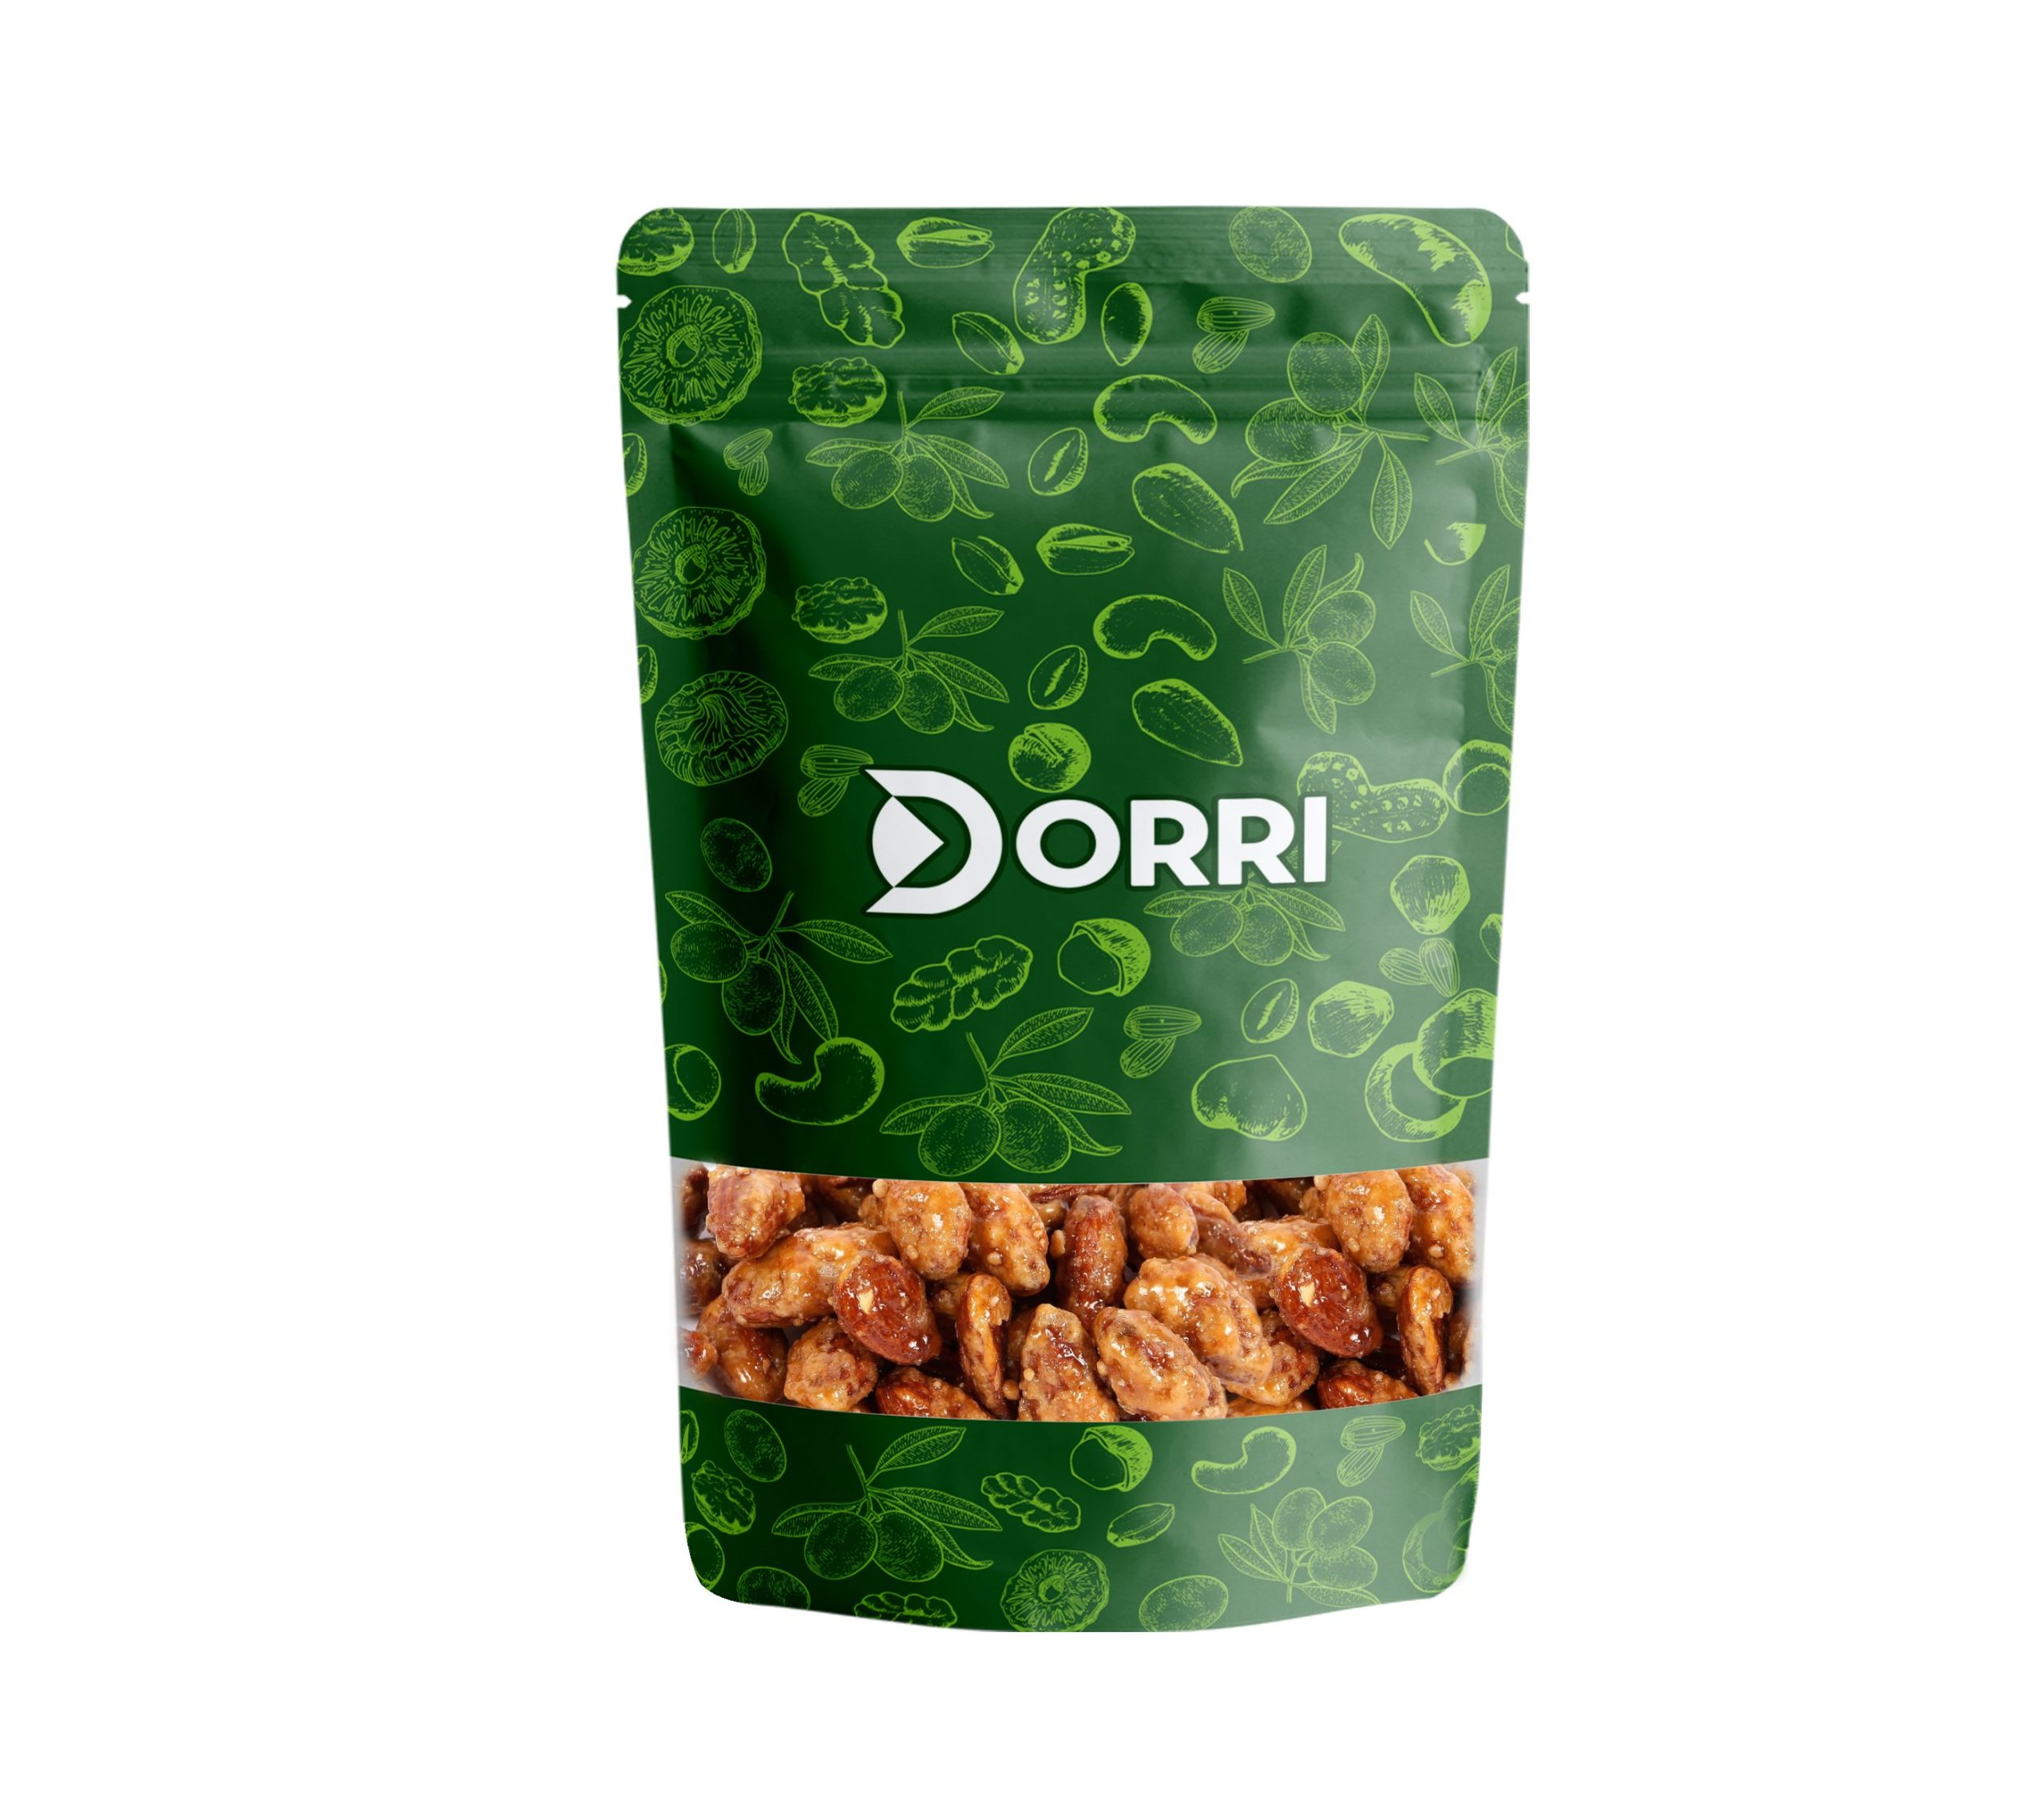 Dorri - Honey Roasted Almonds